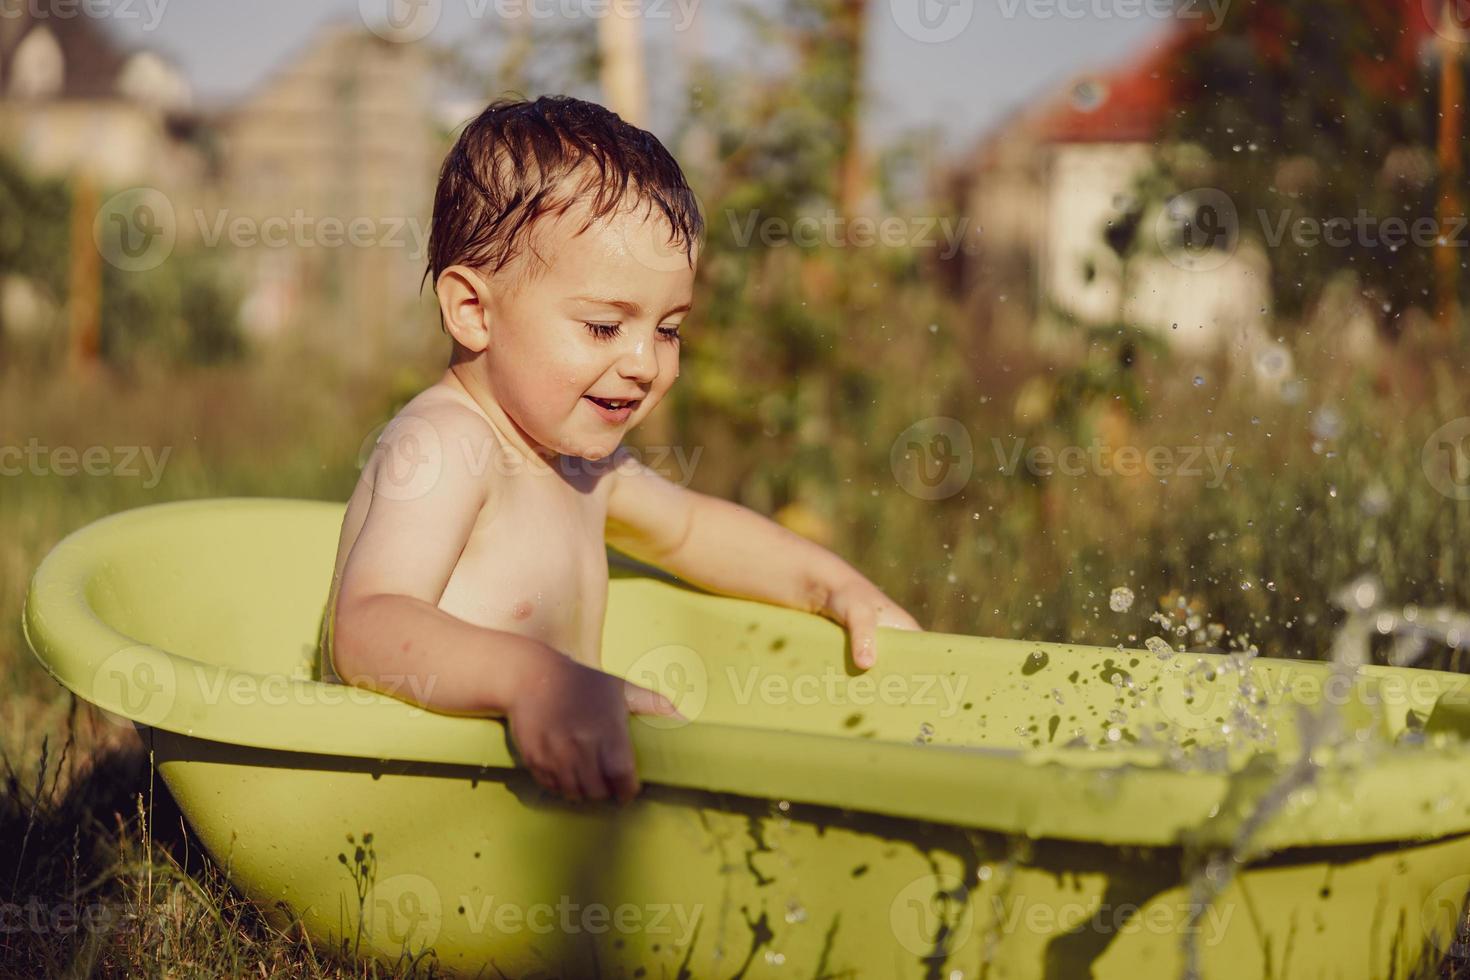 menino bonitinho tomando banho na banheira ao ar livre no jardim. criança feliz está espirrando, brincando com água e se divertindo. temporada de verão e recreação. ficar fresco no calor do verão. diversão aquática no quintal. foto